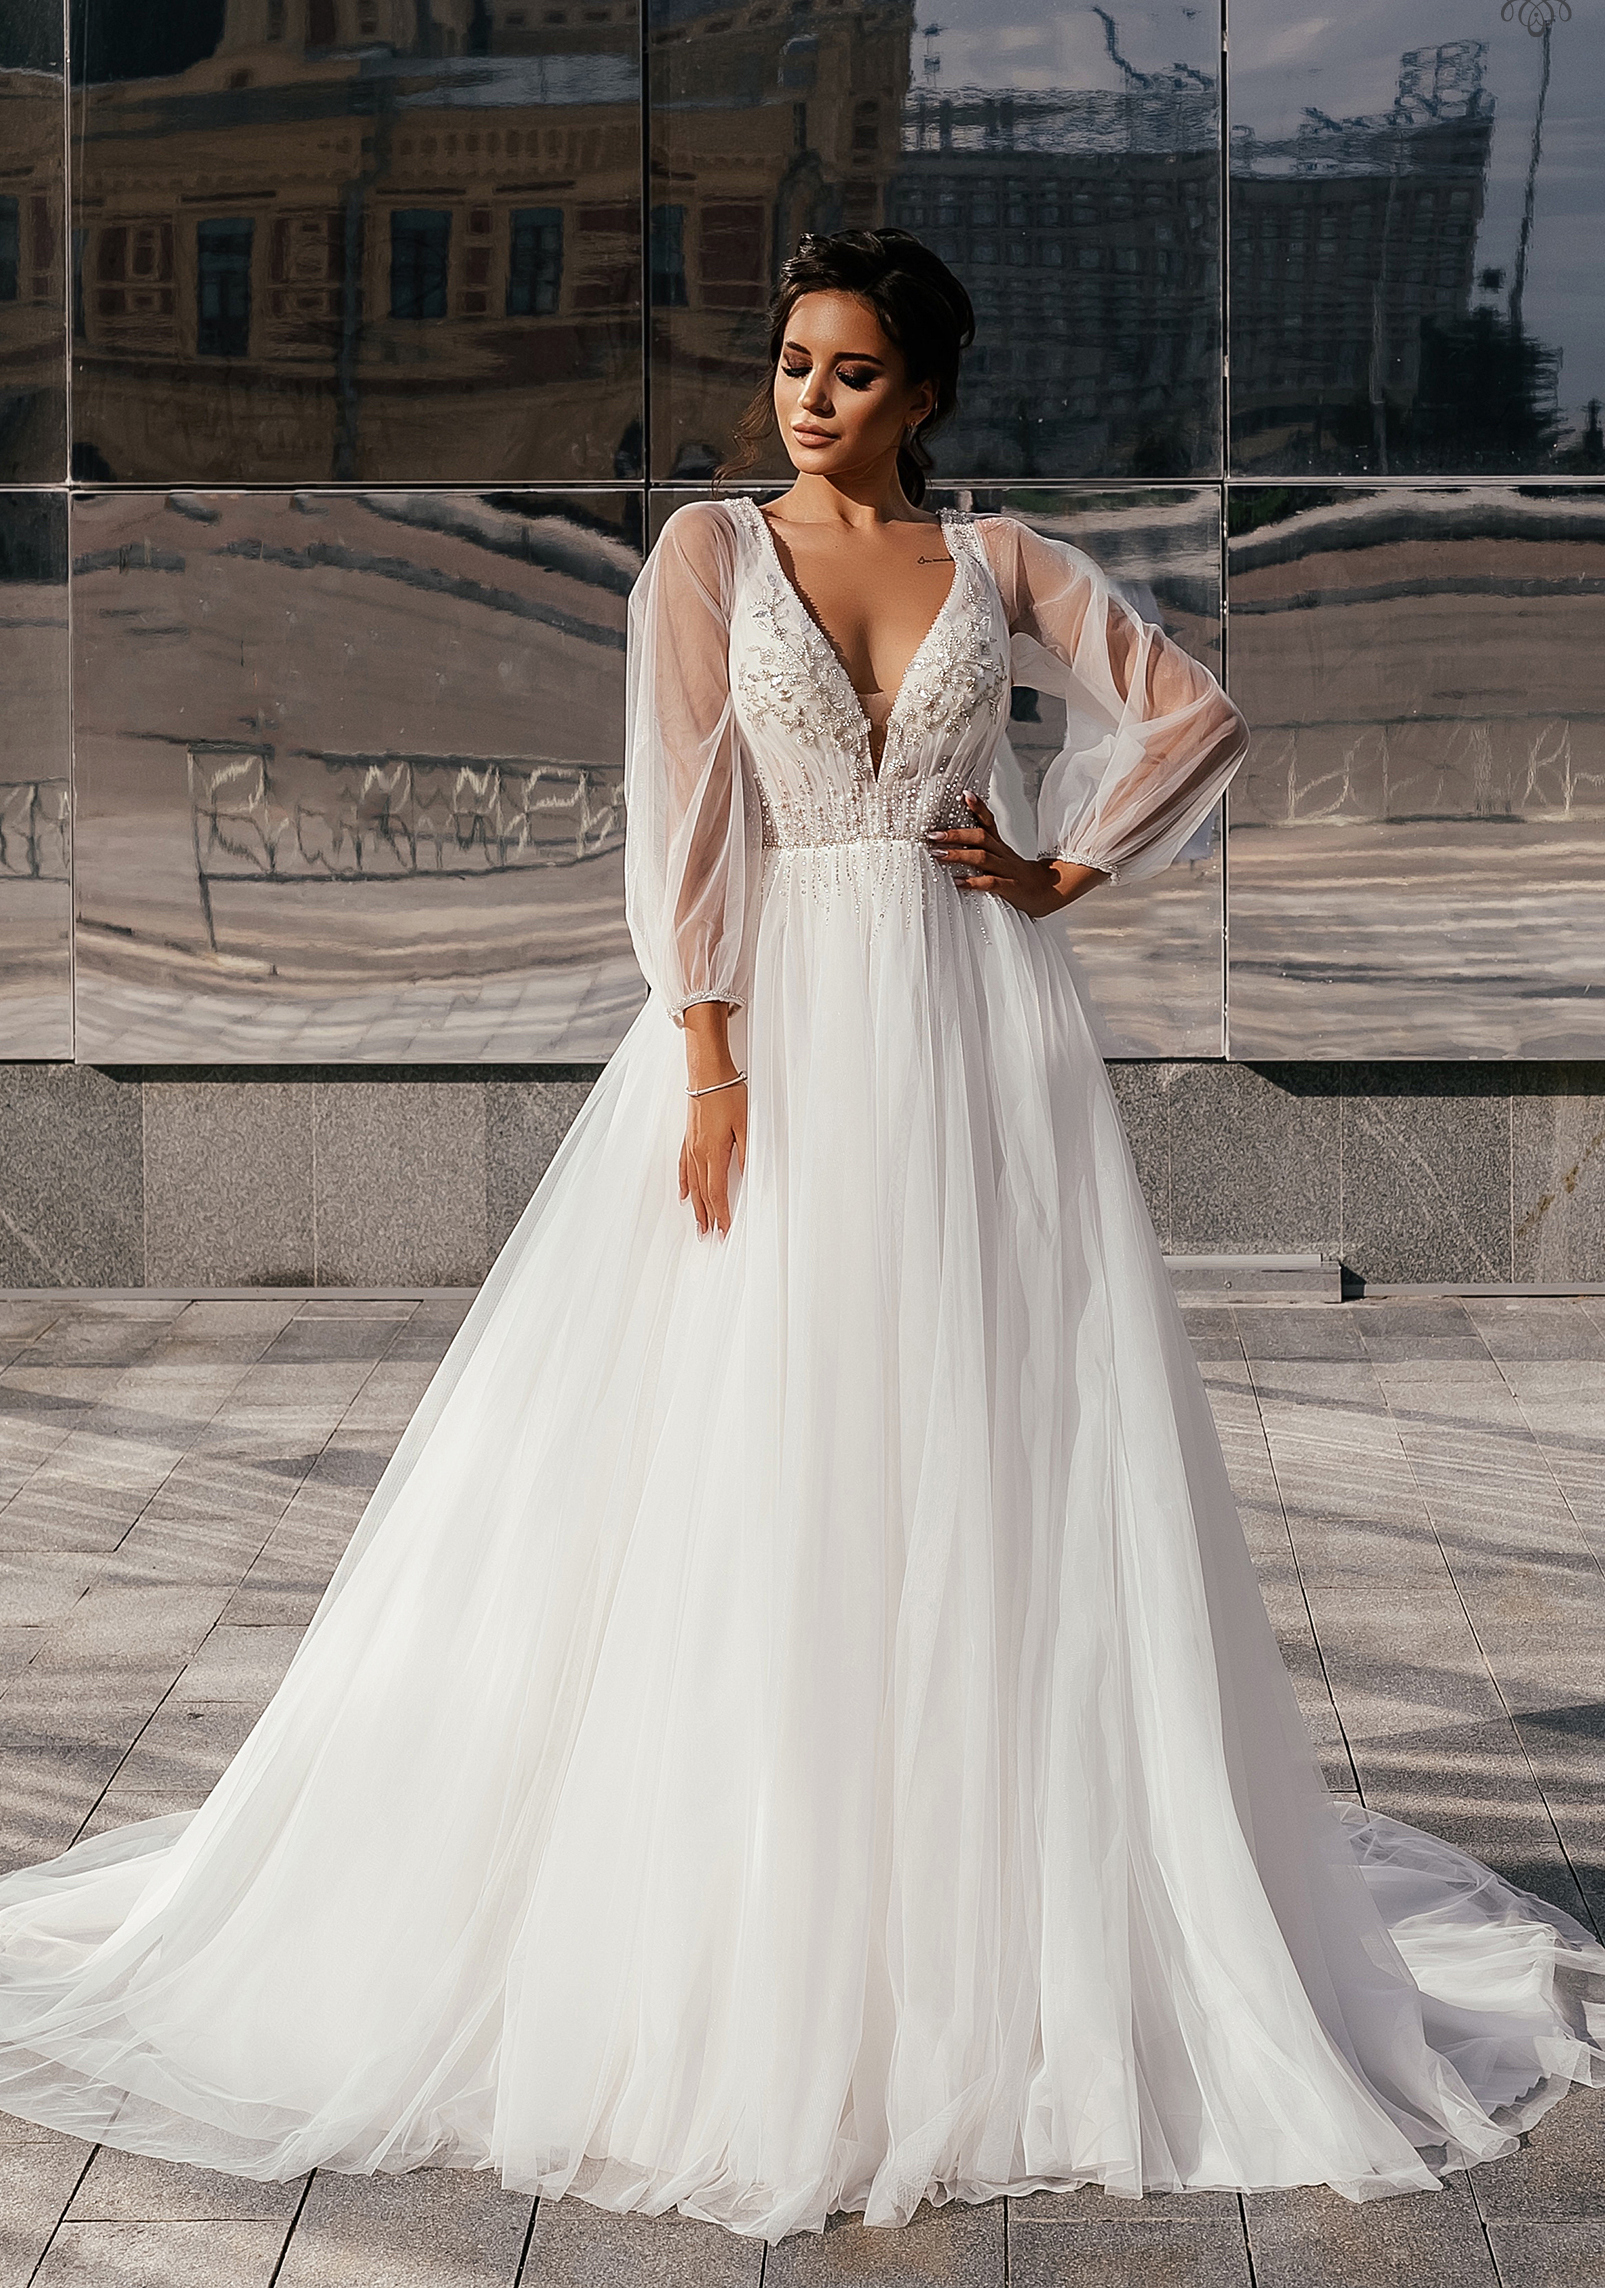 Свадебное платье под заказ G-2021-10